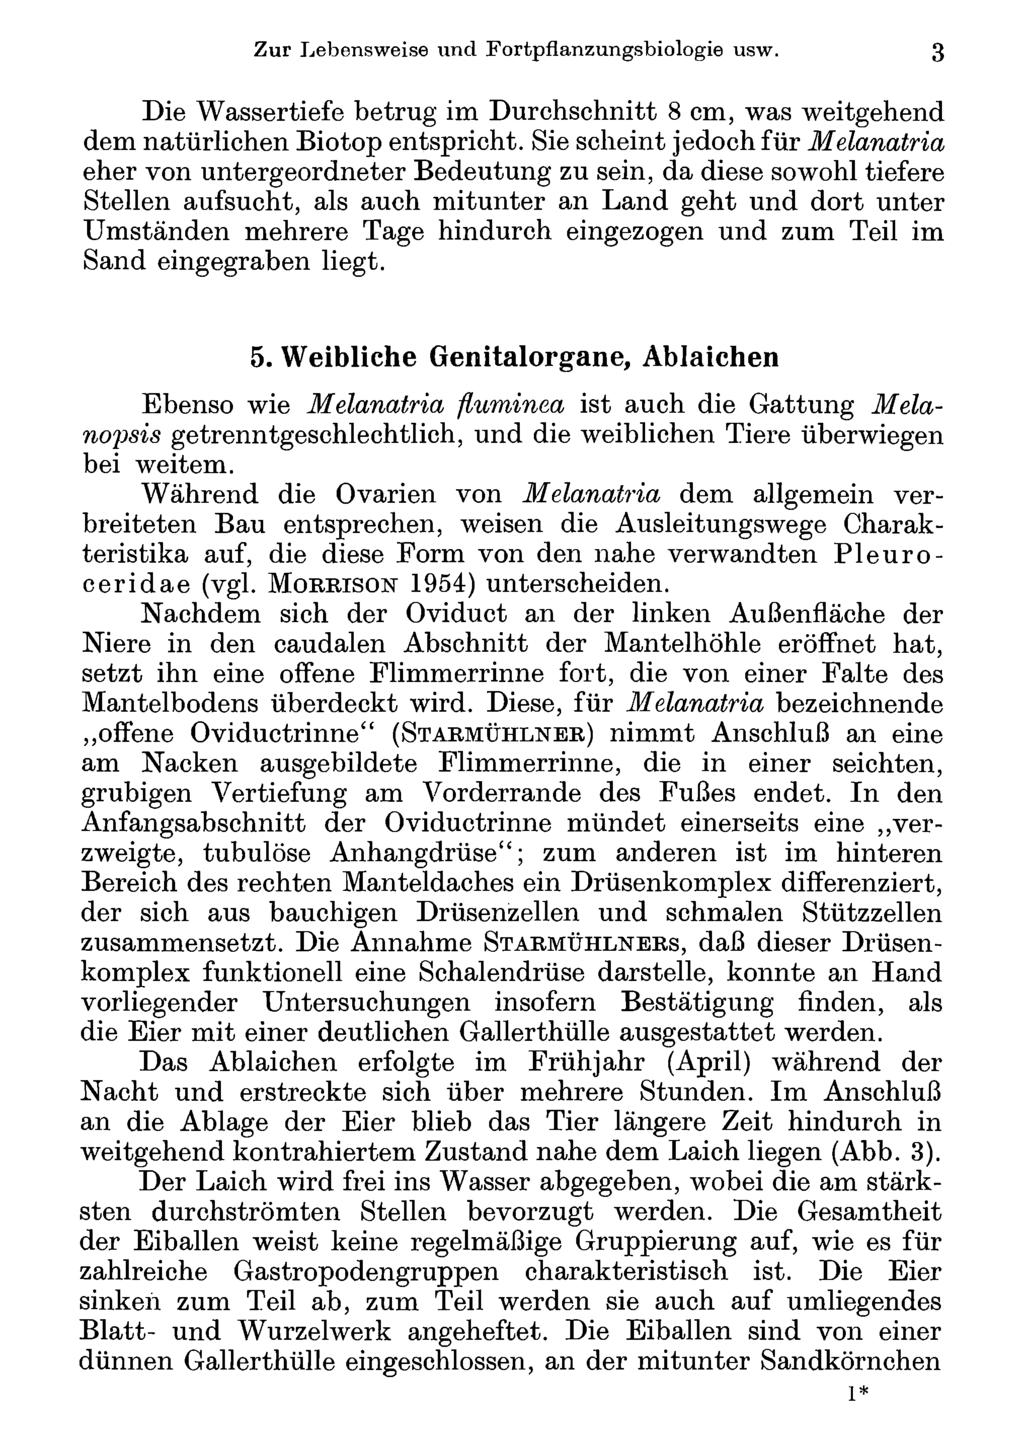 Akademie Zur Lebensweise d. Wissenschaften und Wien; Fortpflanzungsbiologie download unter www.biologiezentrum.at usw.